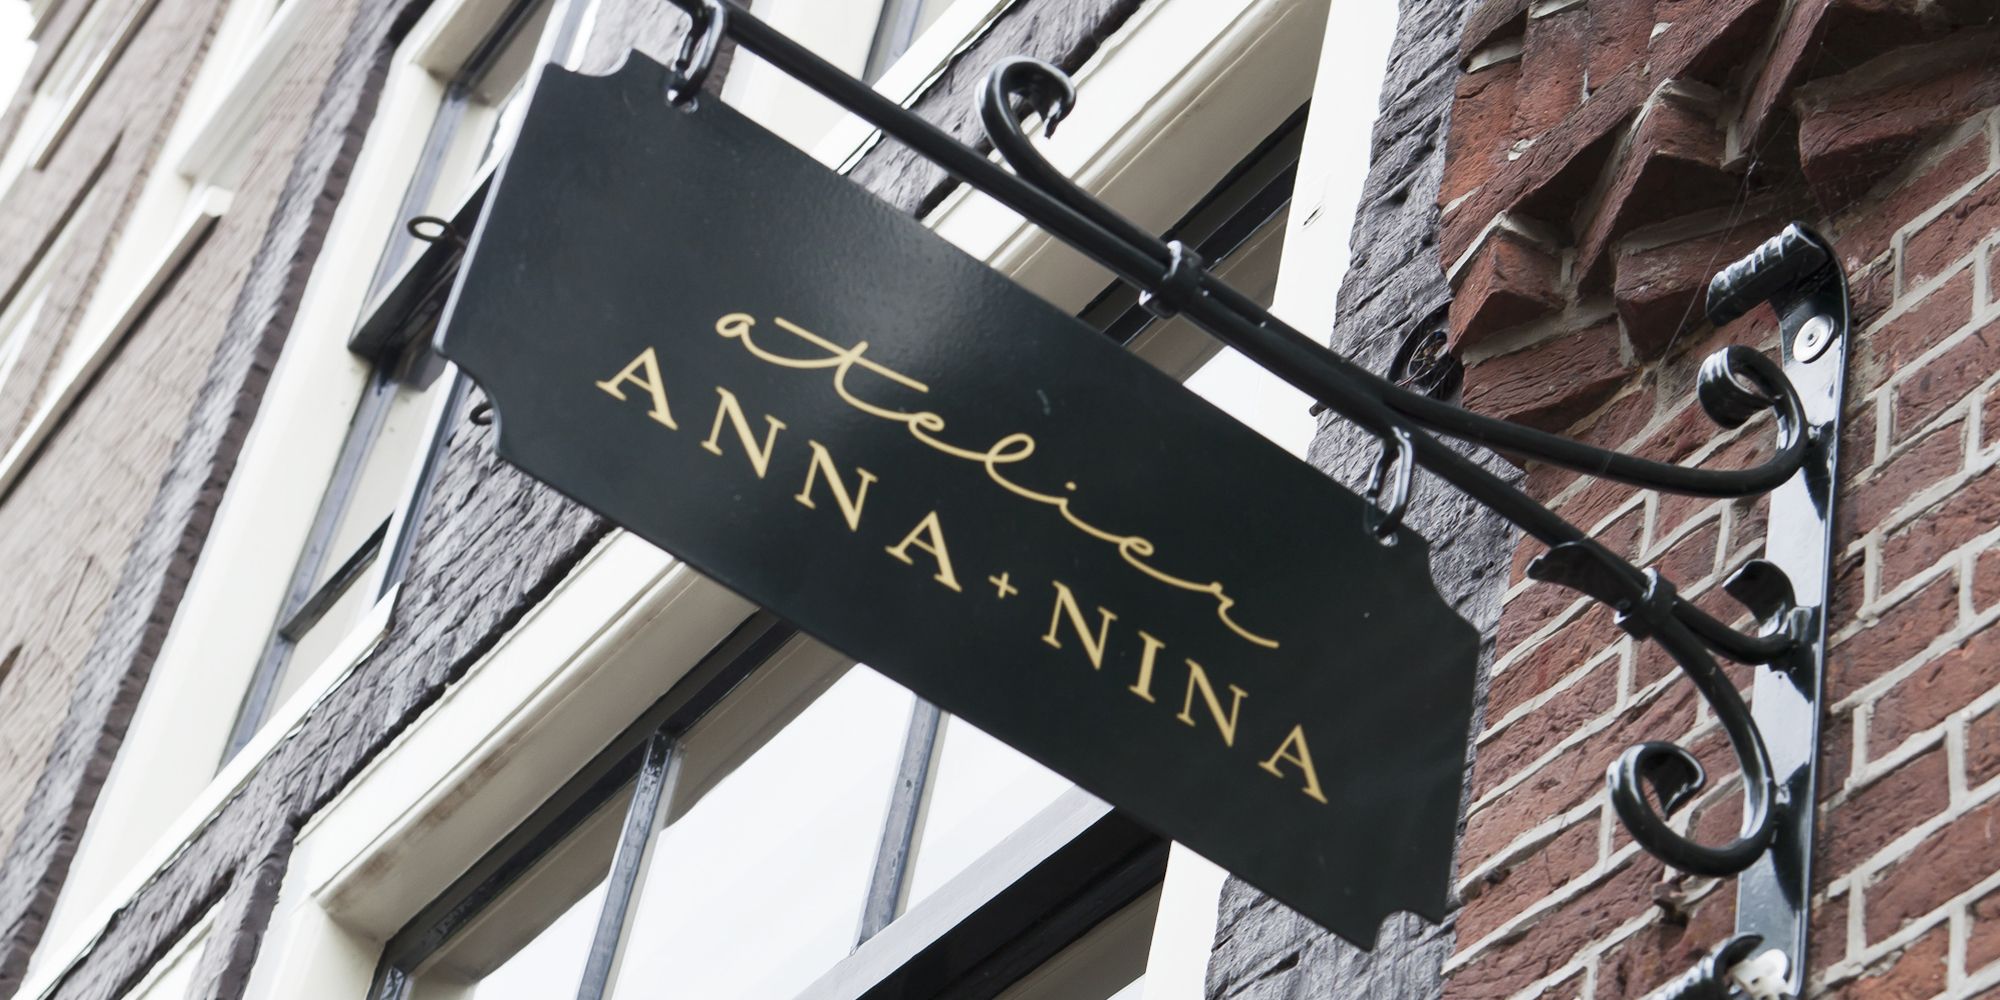 Respect personeelszaken verlichten Nieuw atelier geopend door ANNA+NINA